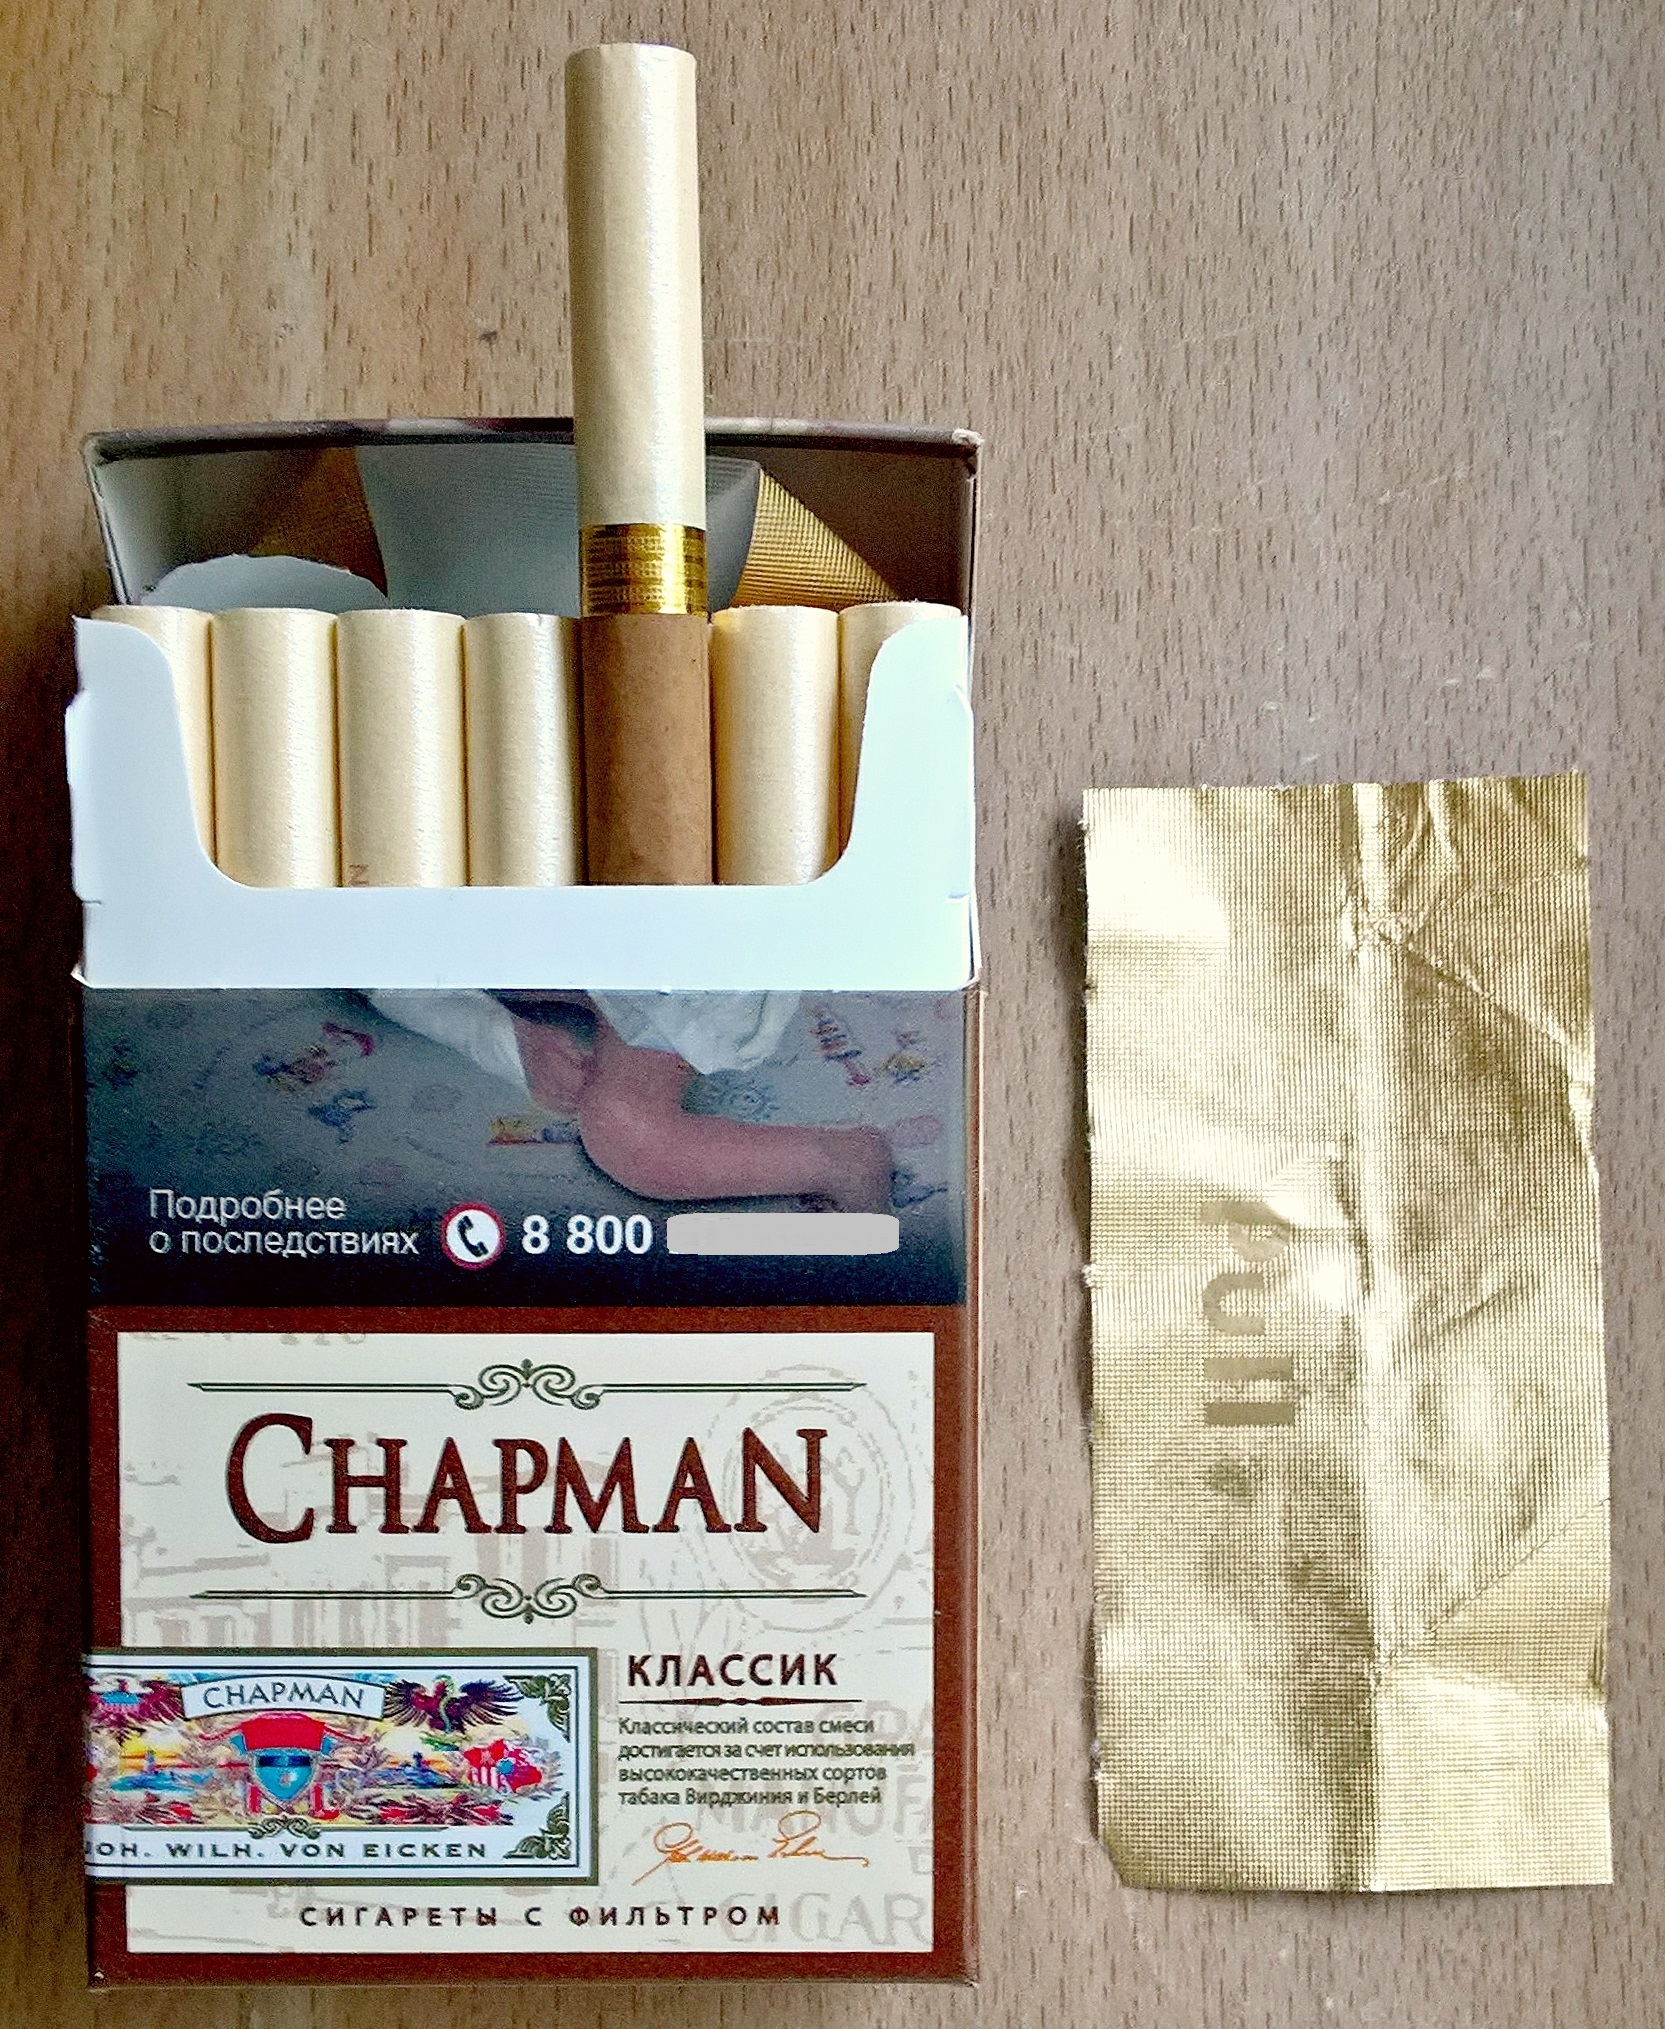 Где Купить Чапман Сигареты В Екатеринбурге